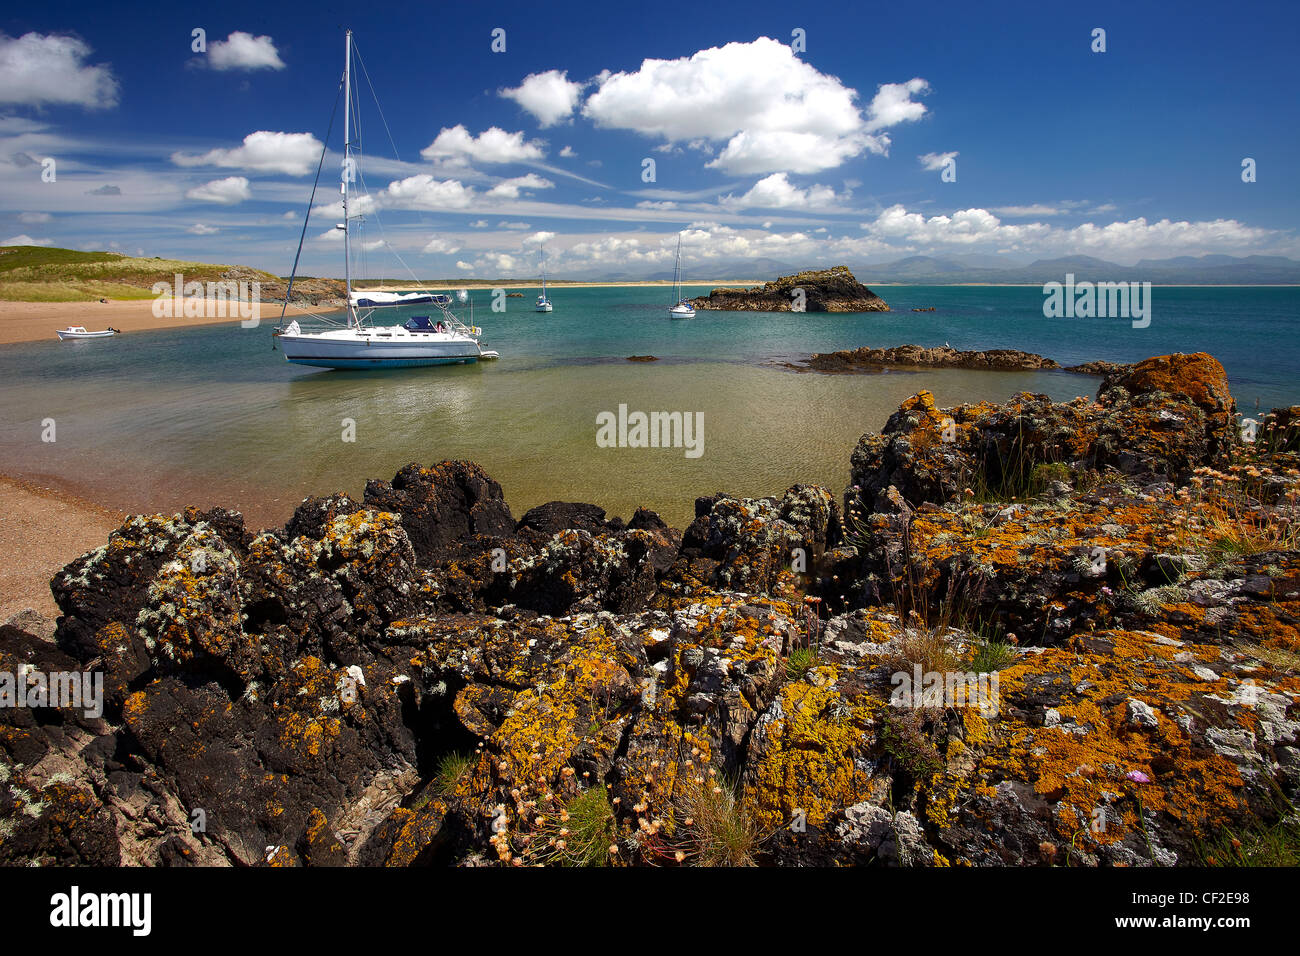 Yachts amarrés dans une baie sur l'île Llanddwyn, une île à marée coupée du continent à marée haute. Banque D'Images